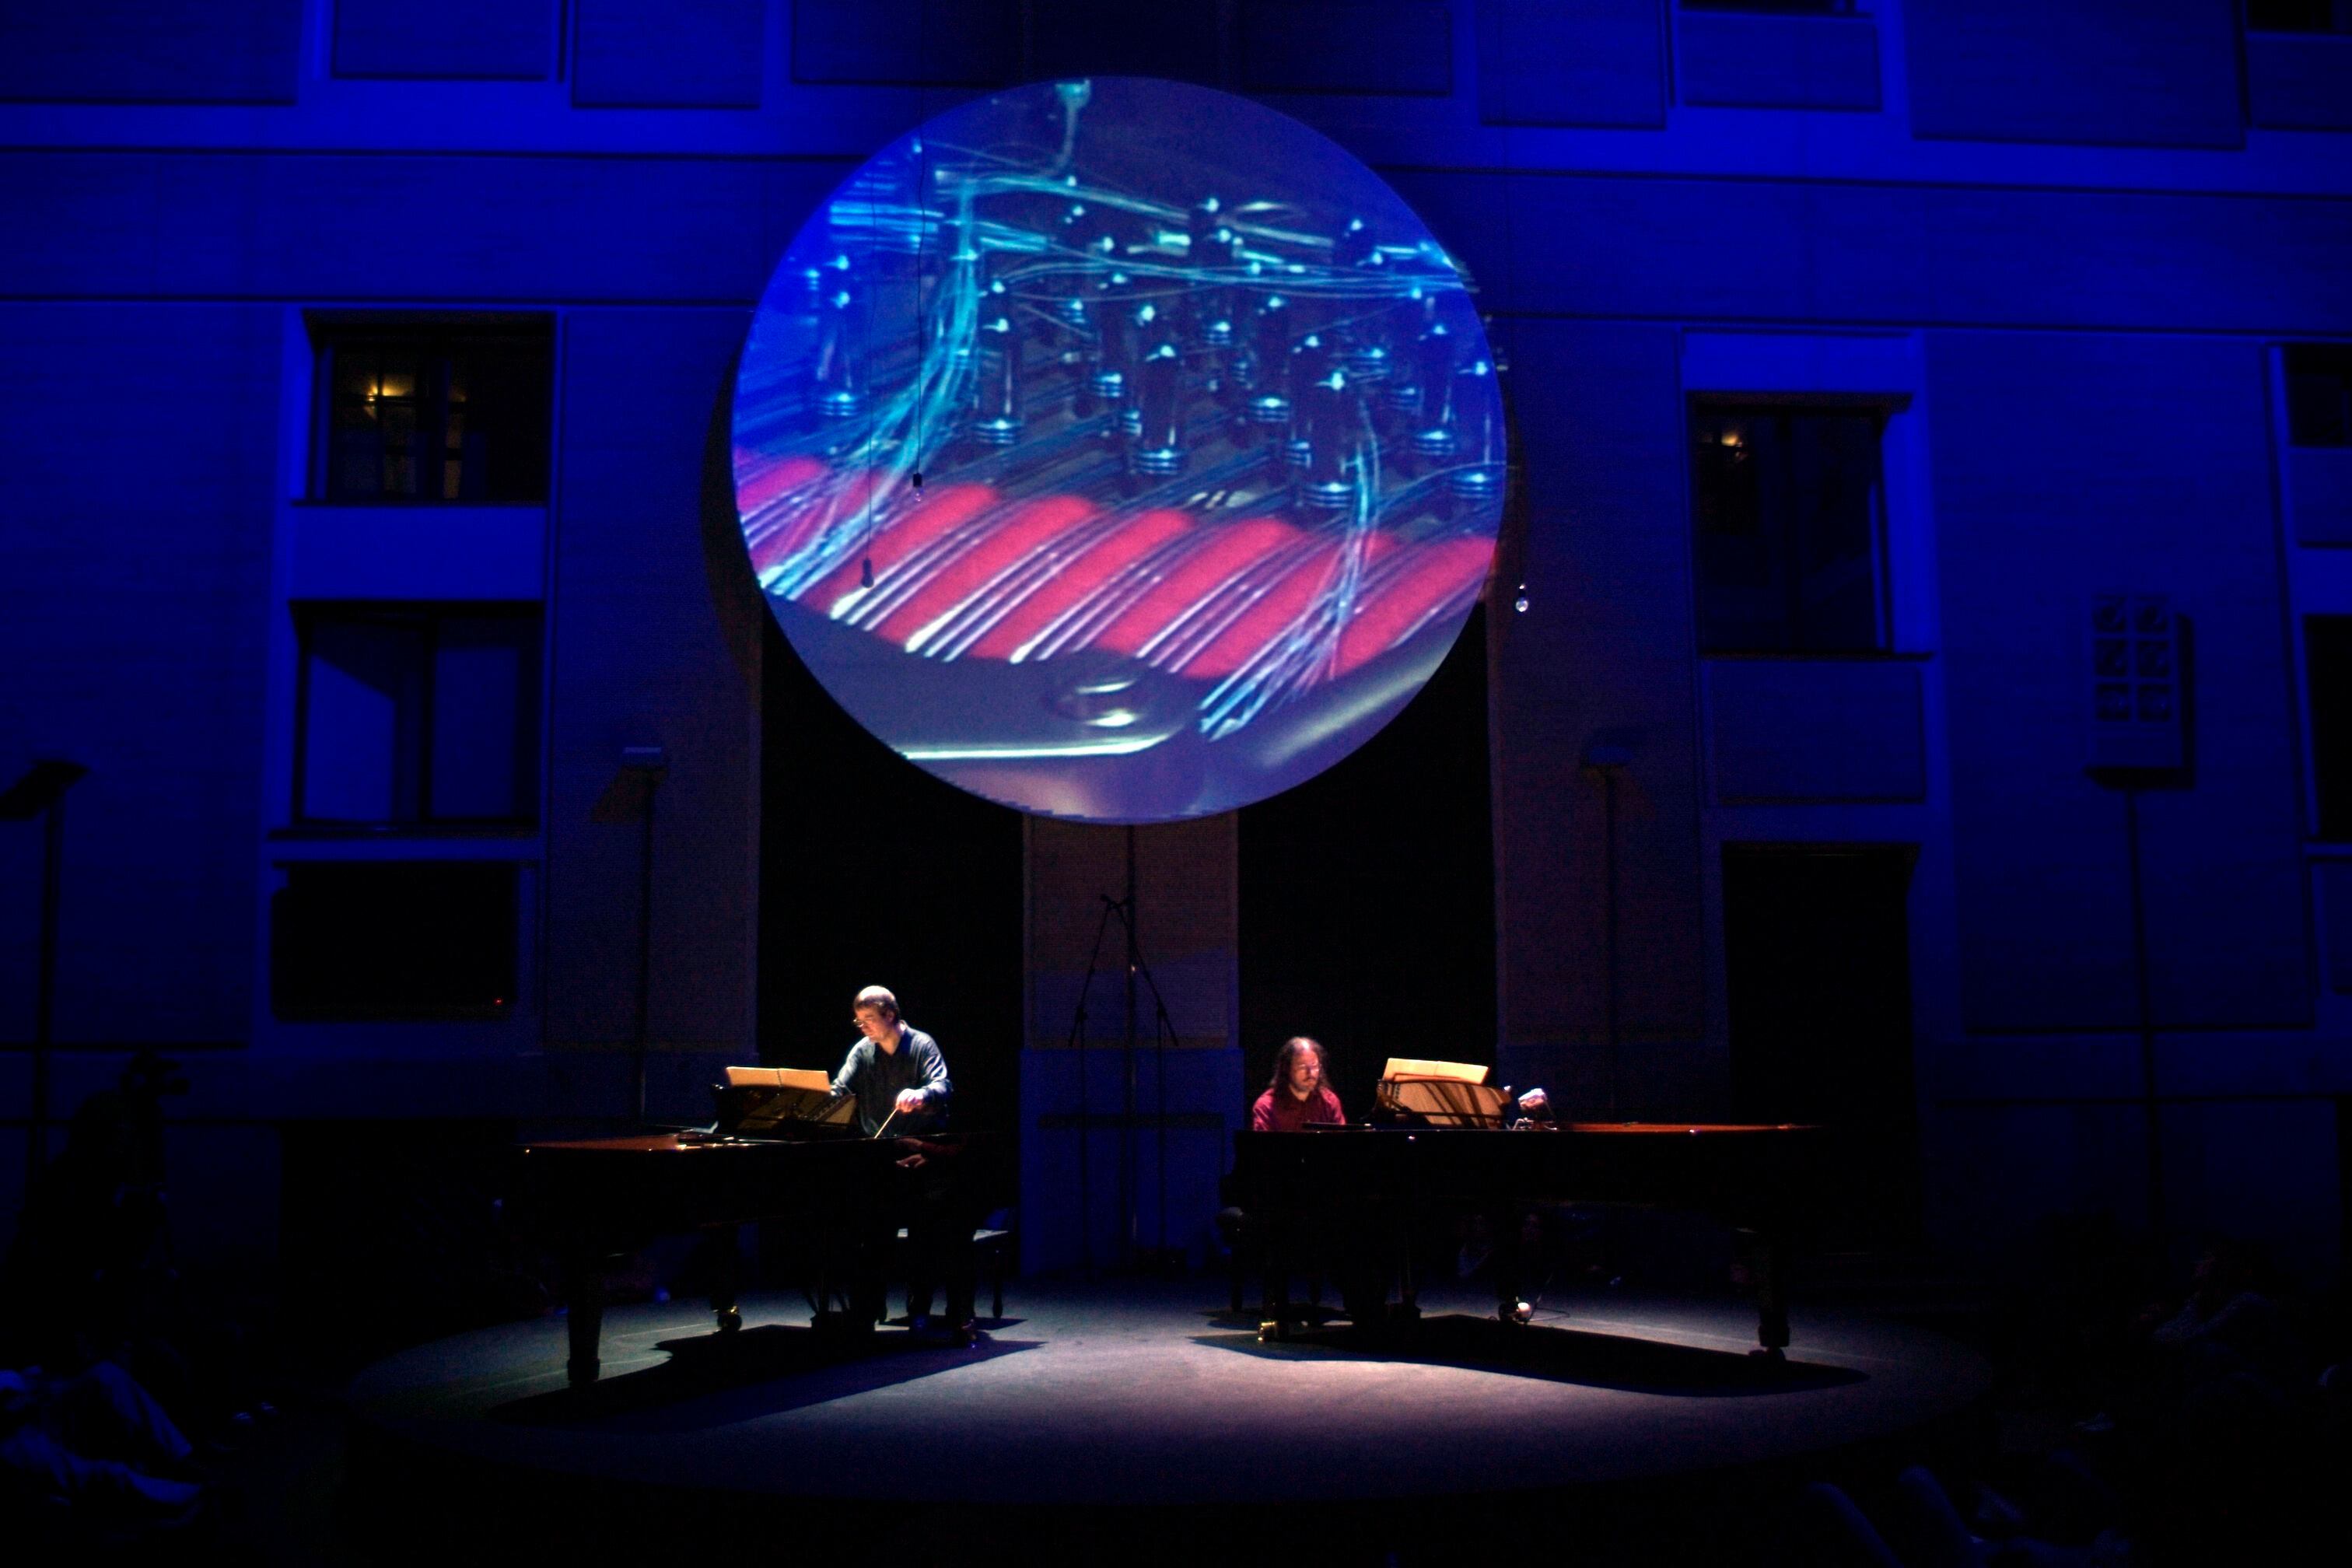 La exposición 'Un piano preparado', arranque de una retrospectiva histórica para celebrar el 20º aniversario de La Casa Encendida, toma su nombre de la performance en homenaje a John Cage celebrada en su patio en 2006.